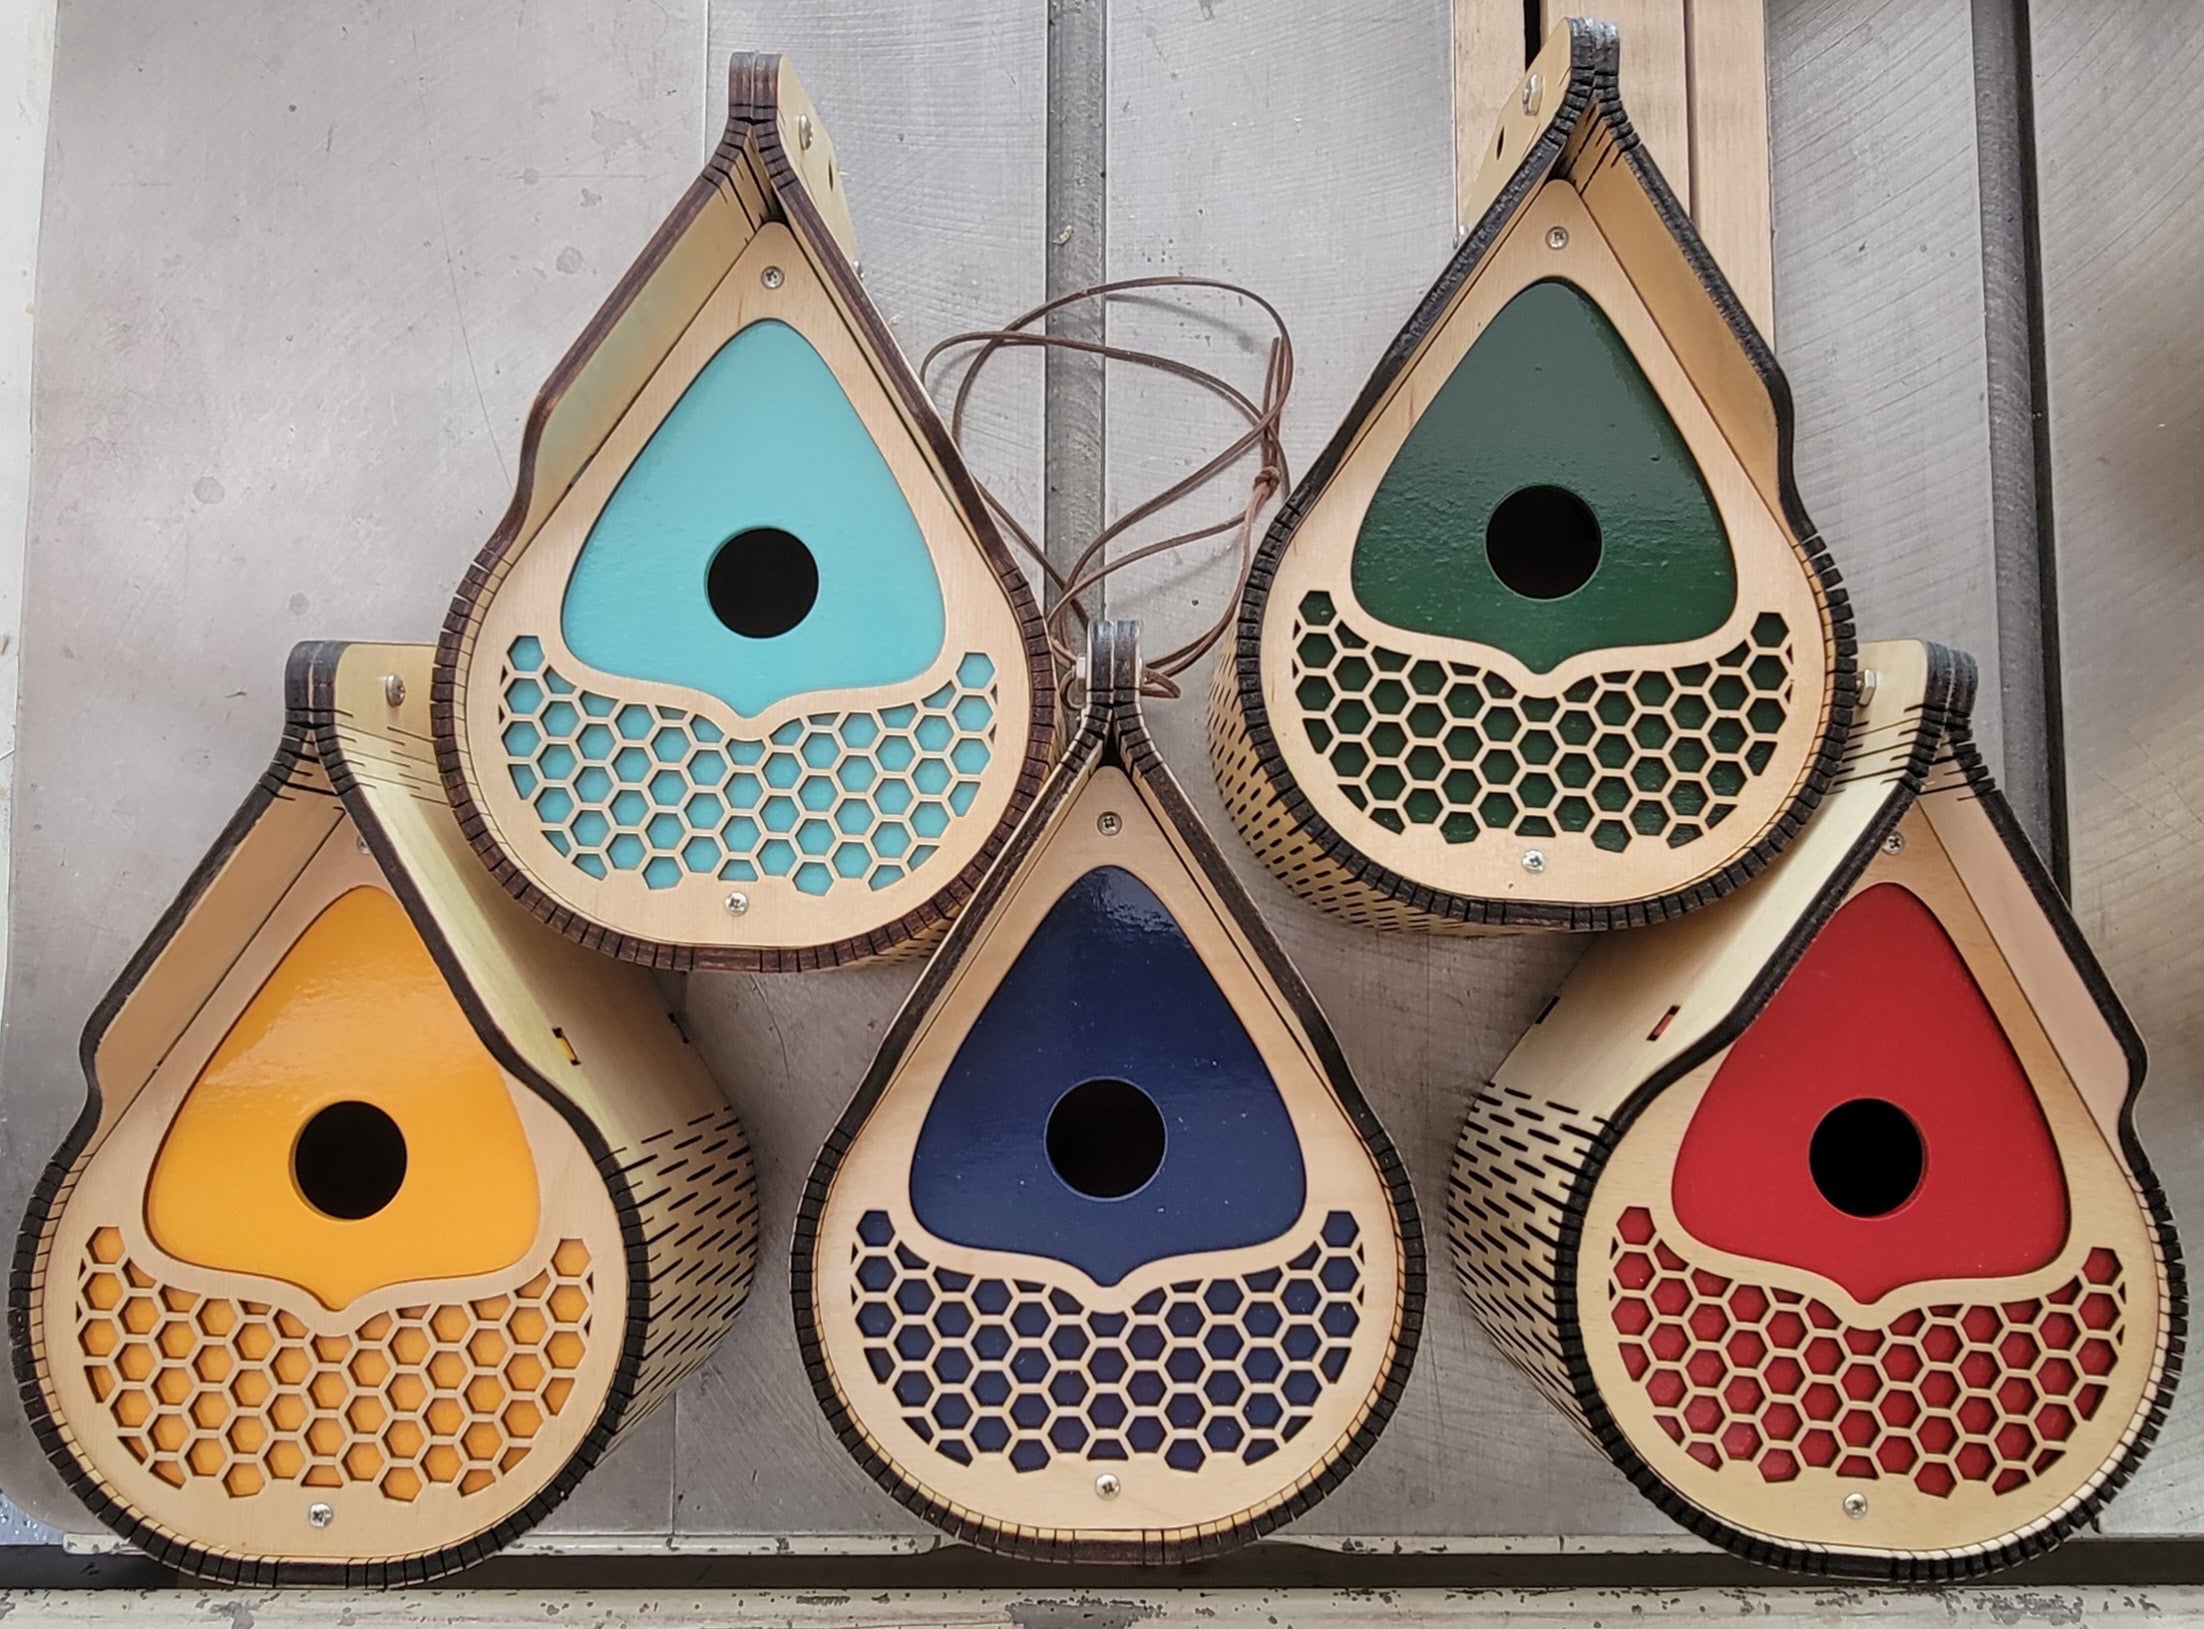 Handmade Tear-Drop Bird Houses